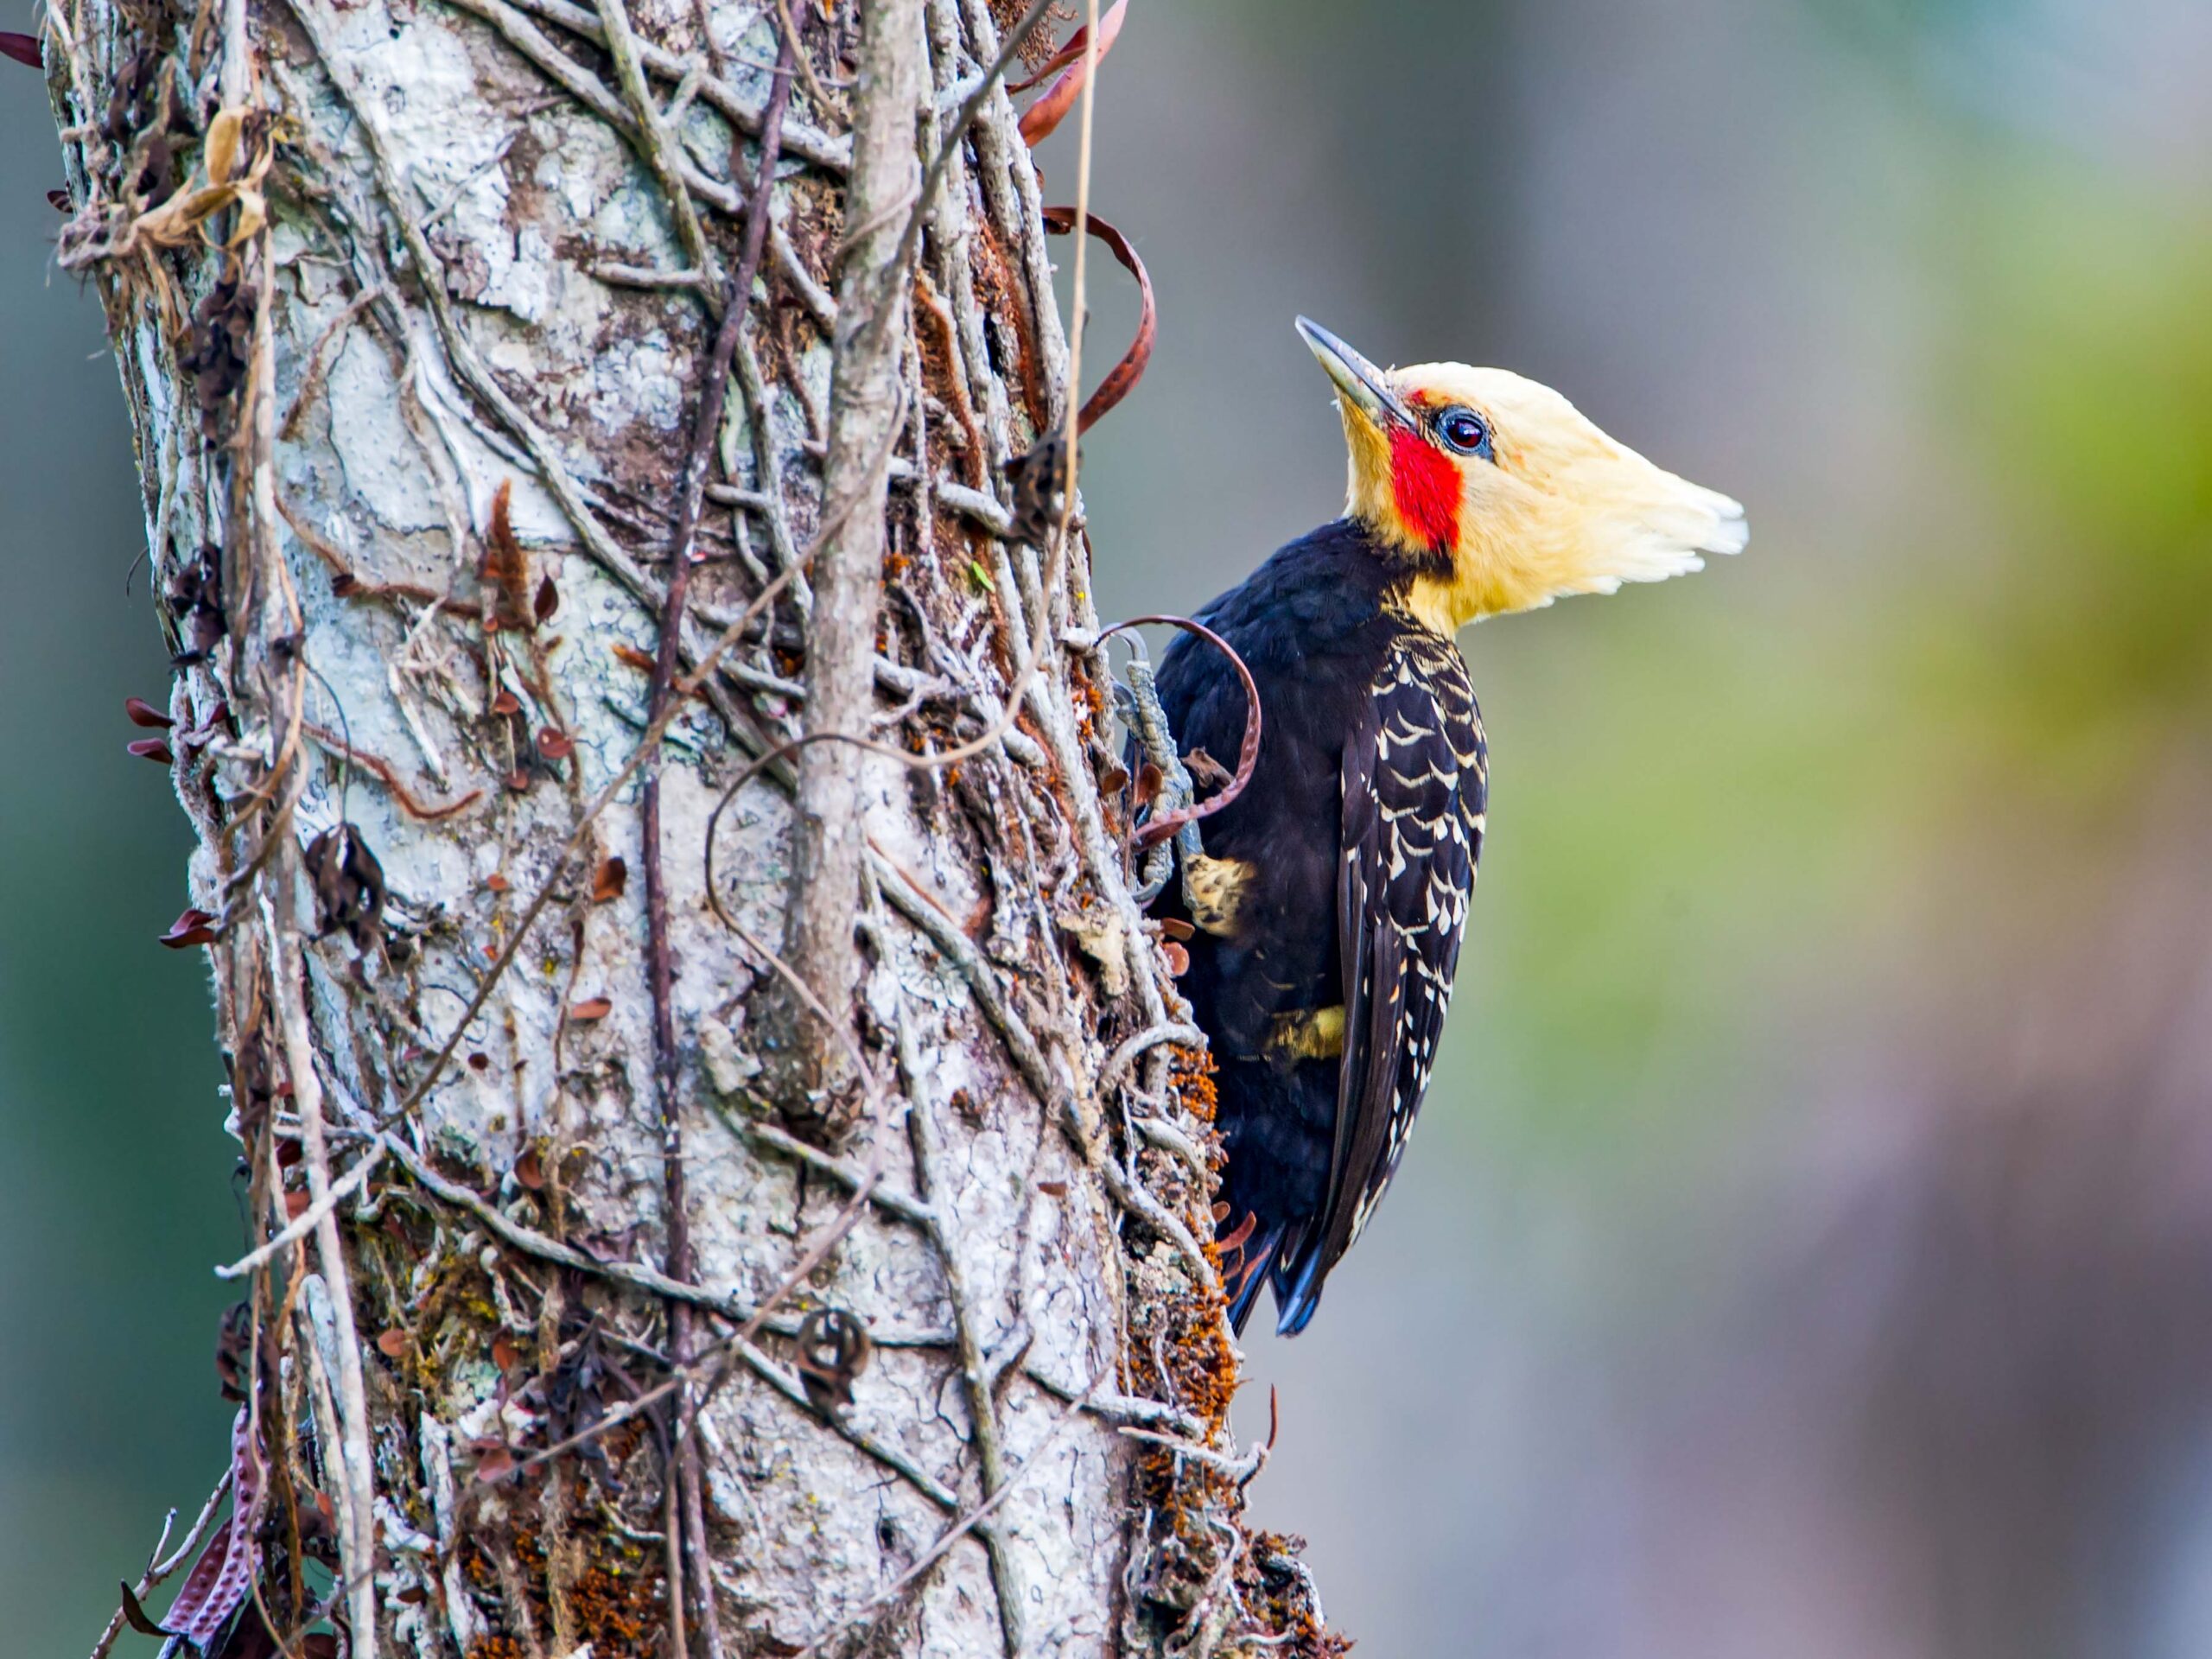 Woodpecker in the Atlantic Forest in Brazil